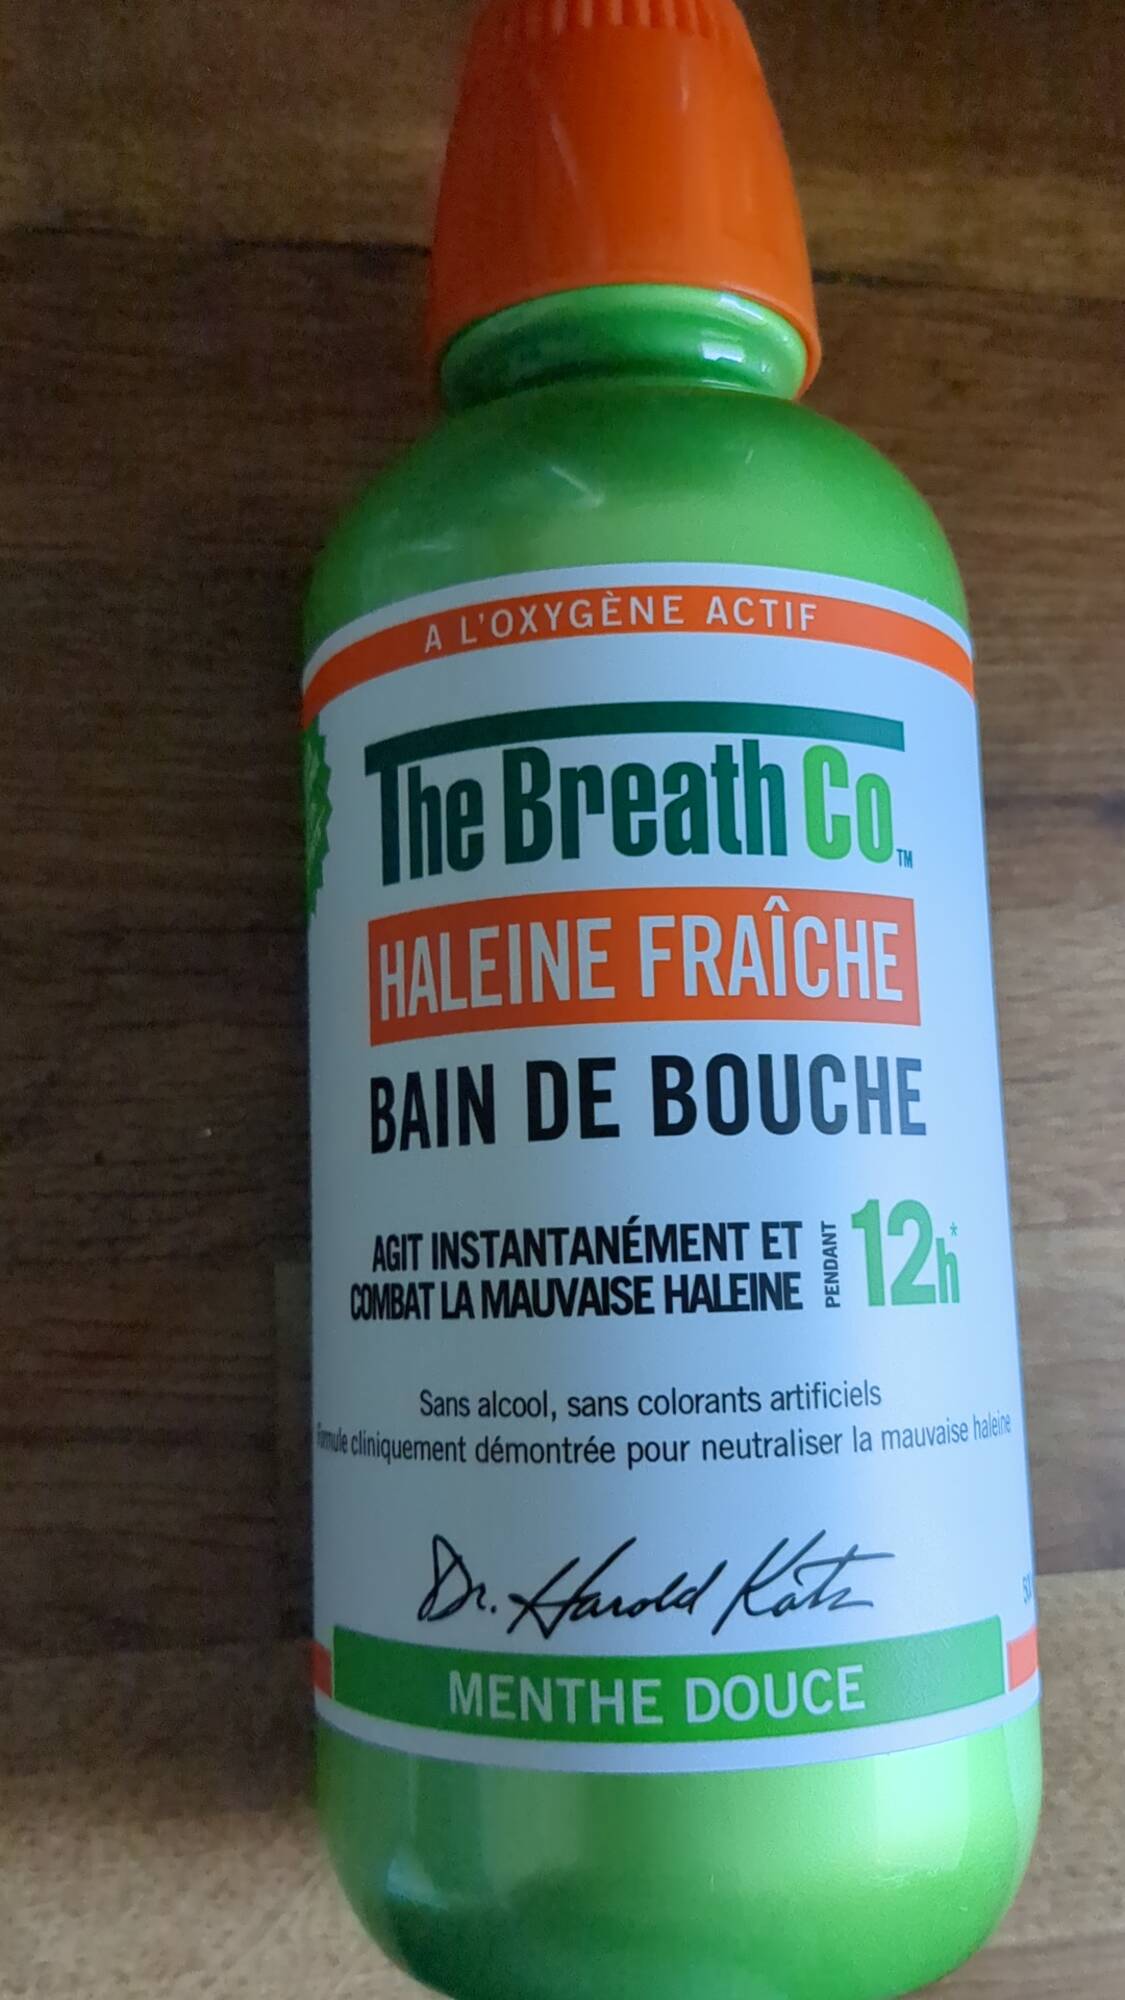 THE BREATH CO. - Bain de bouche haleine fraîche